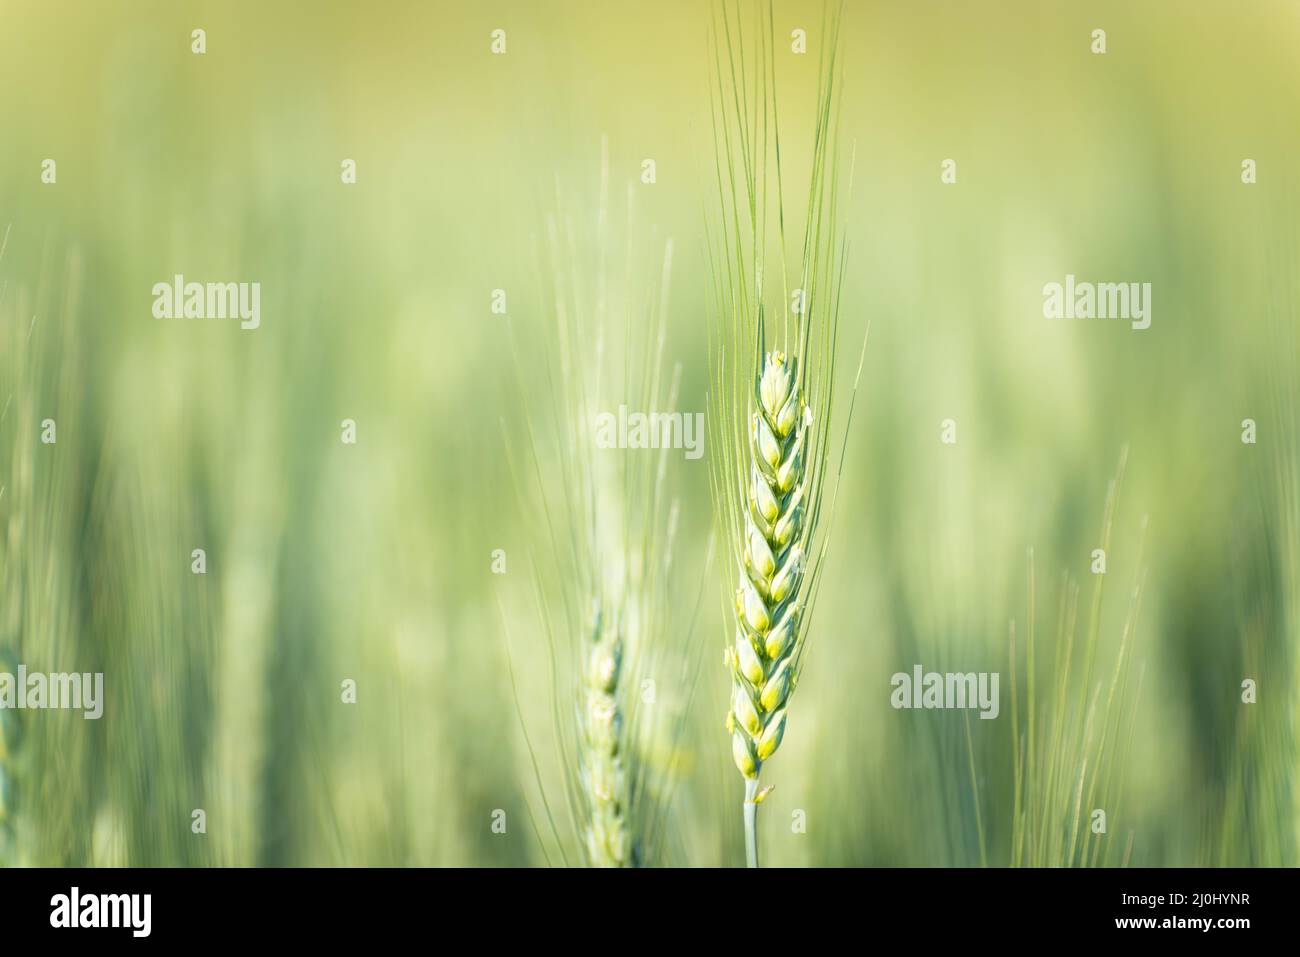 Nahaufnahme des reifen goldenen Weizens mit Vintage-Effekt, Wolken und Himmel - Erntezeit Konzept Stockfoto